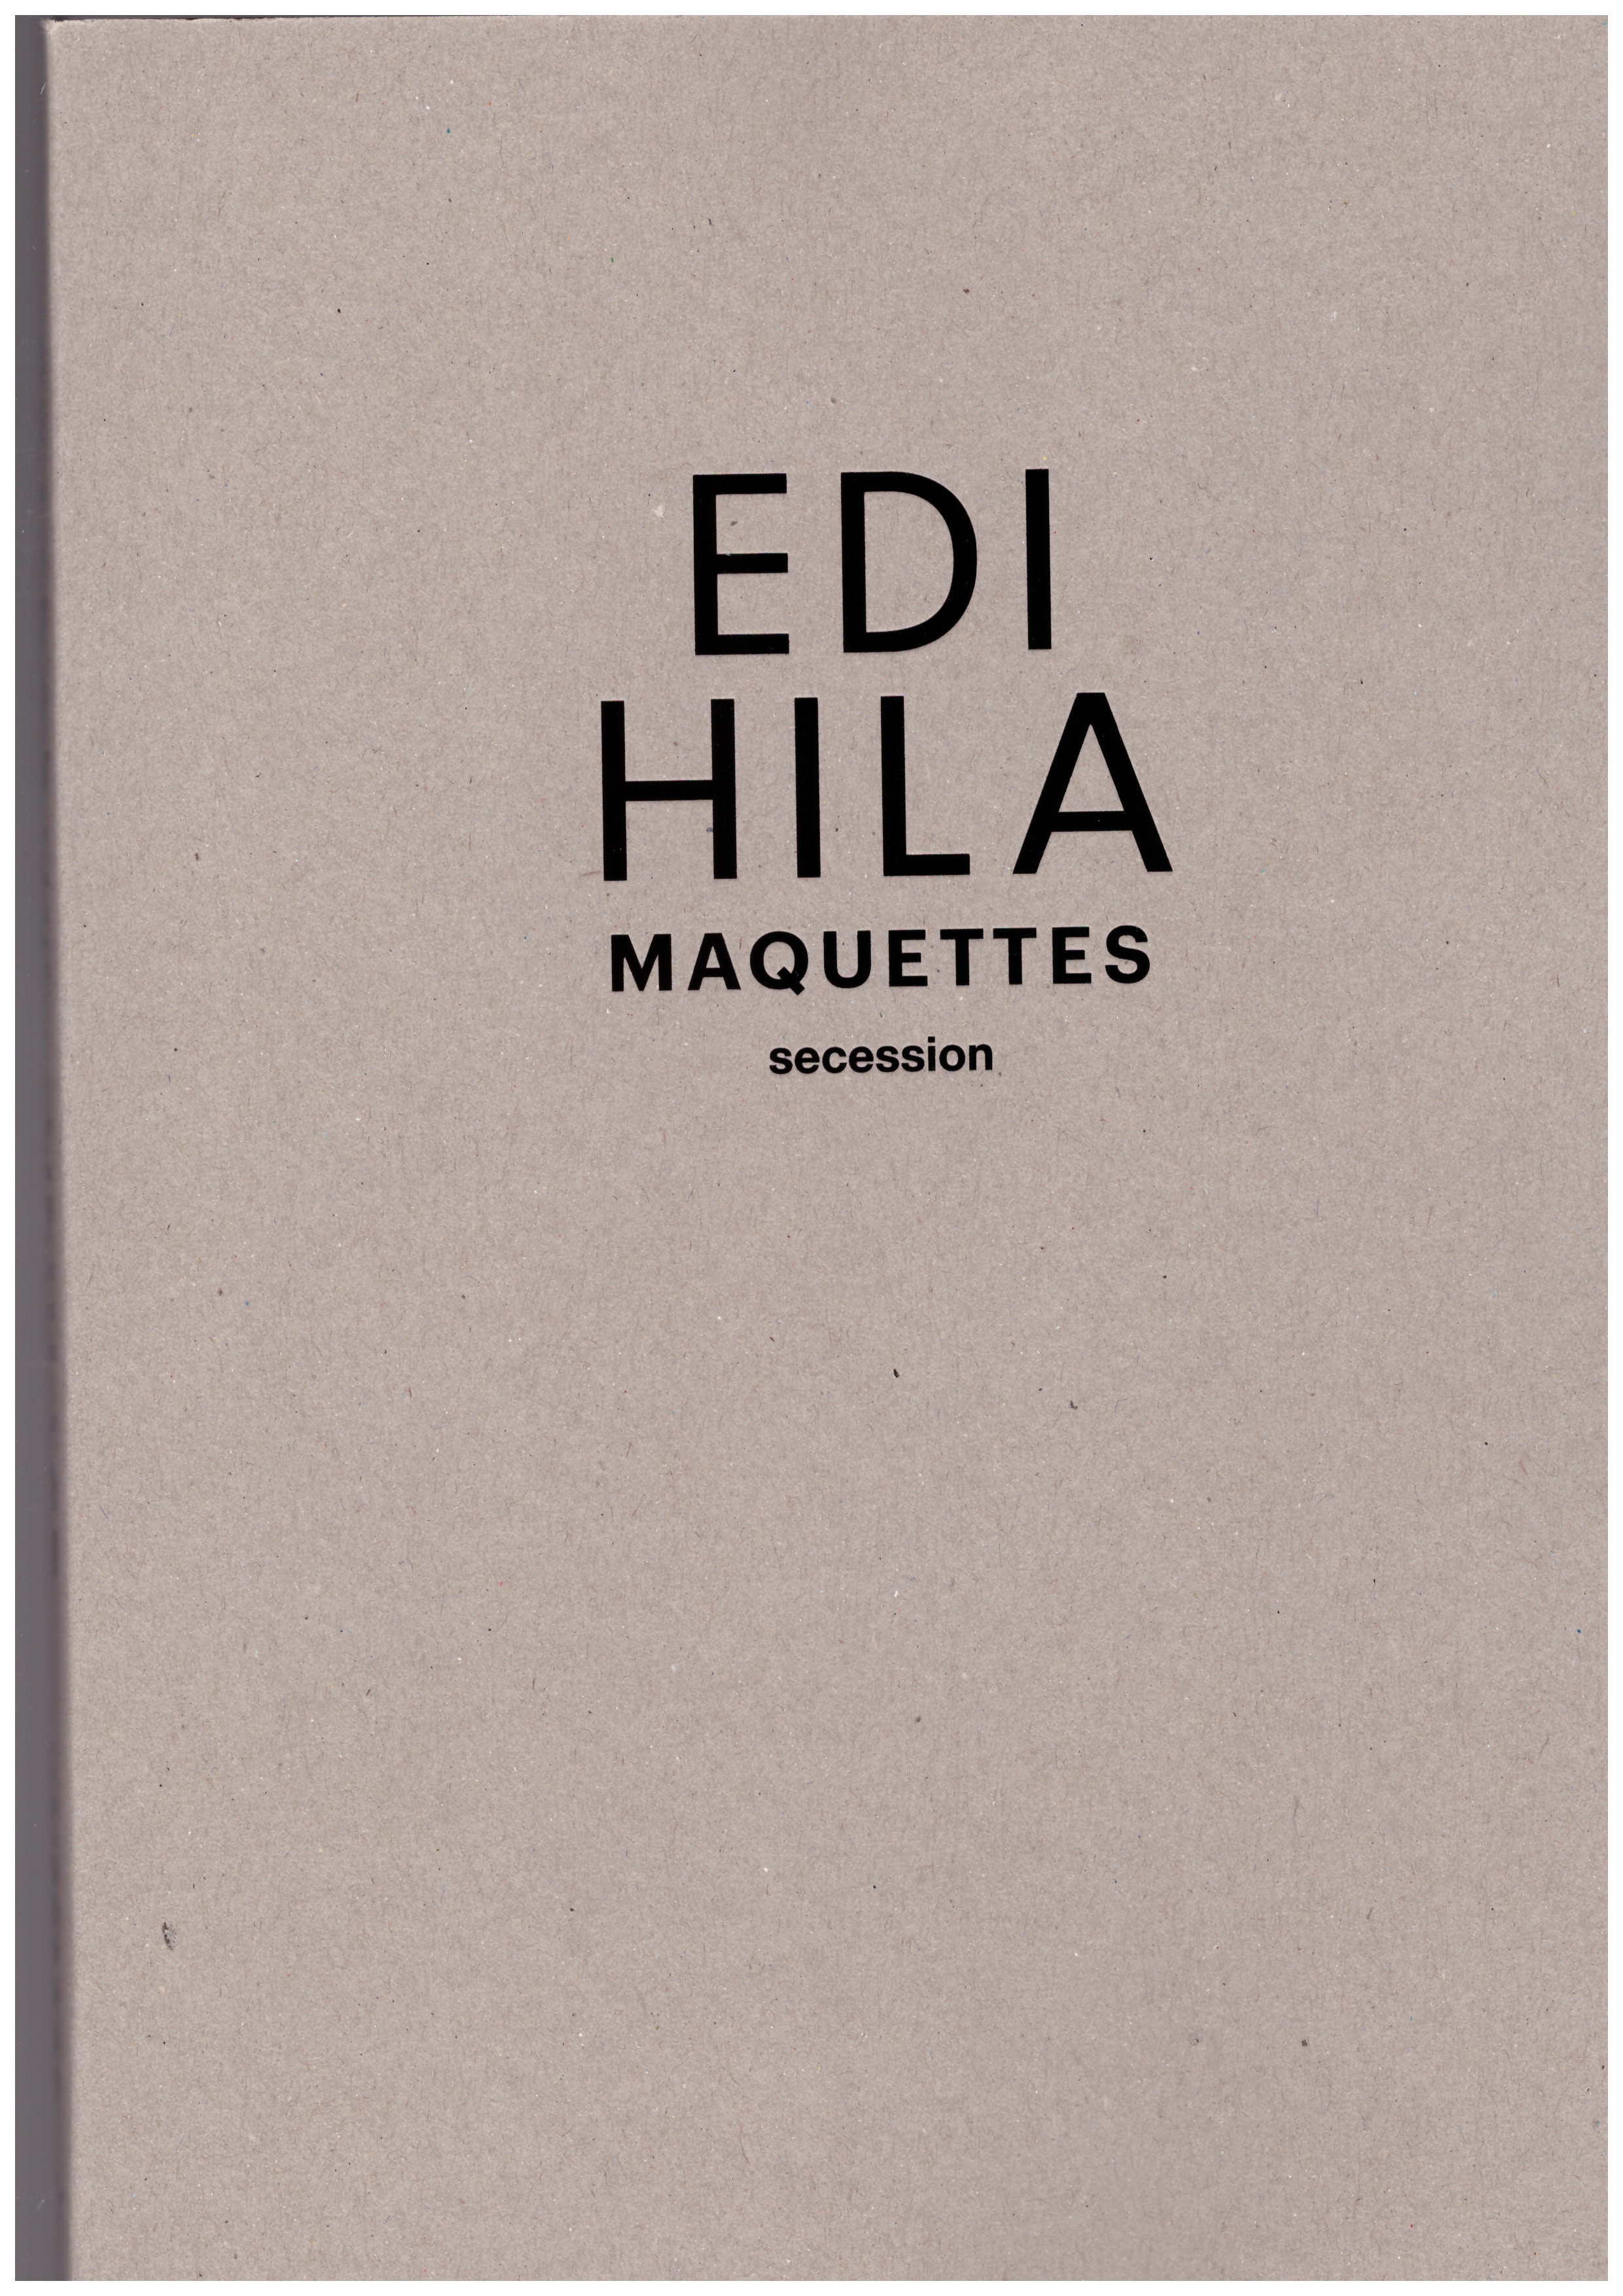 HILA, Edi - Maquettes